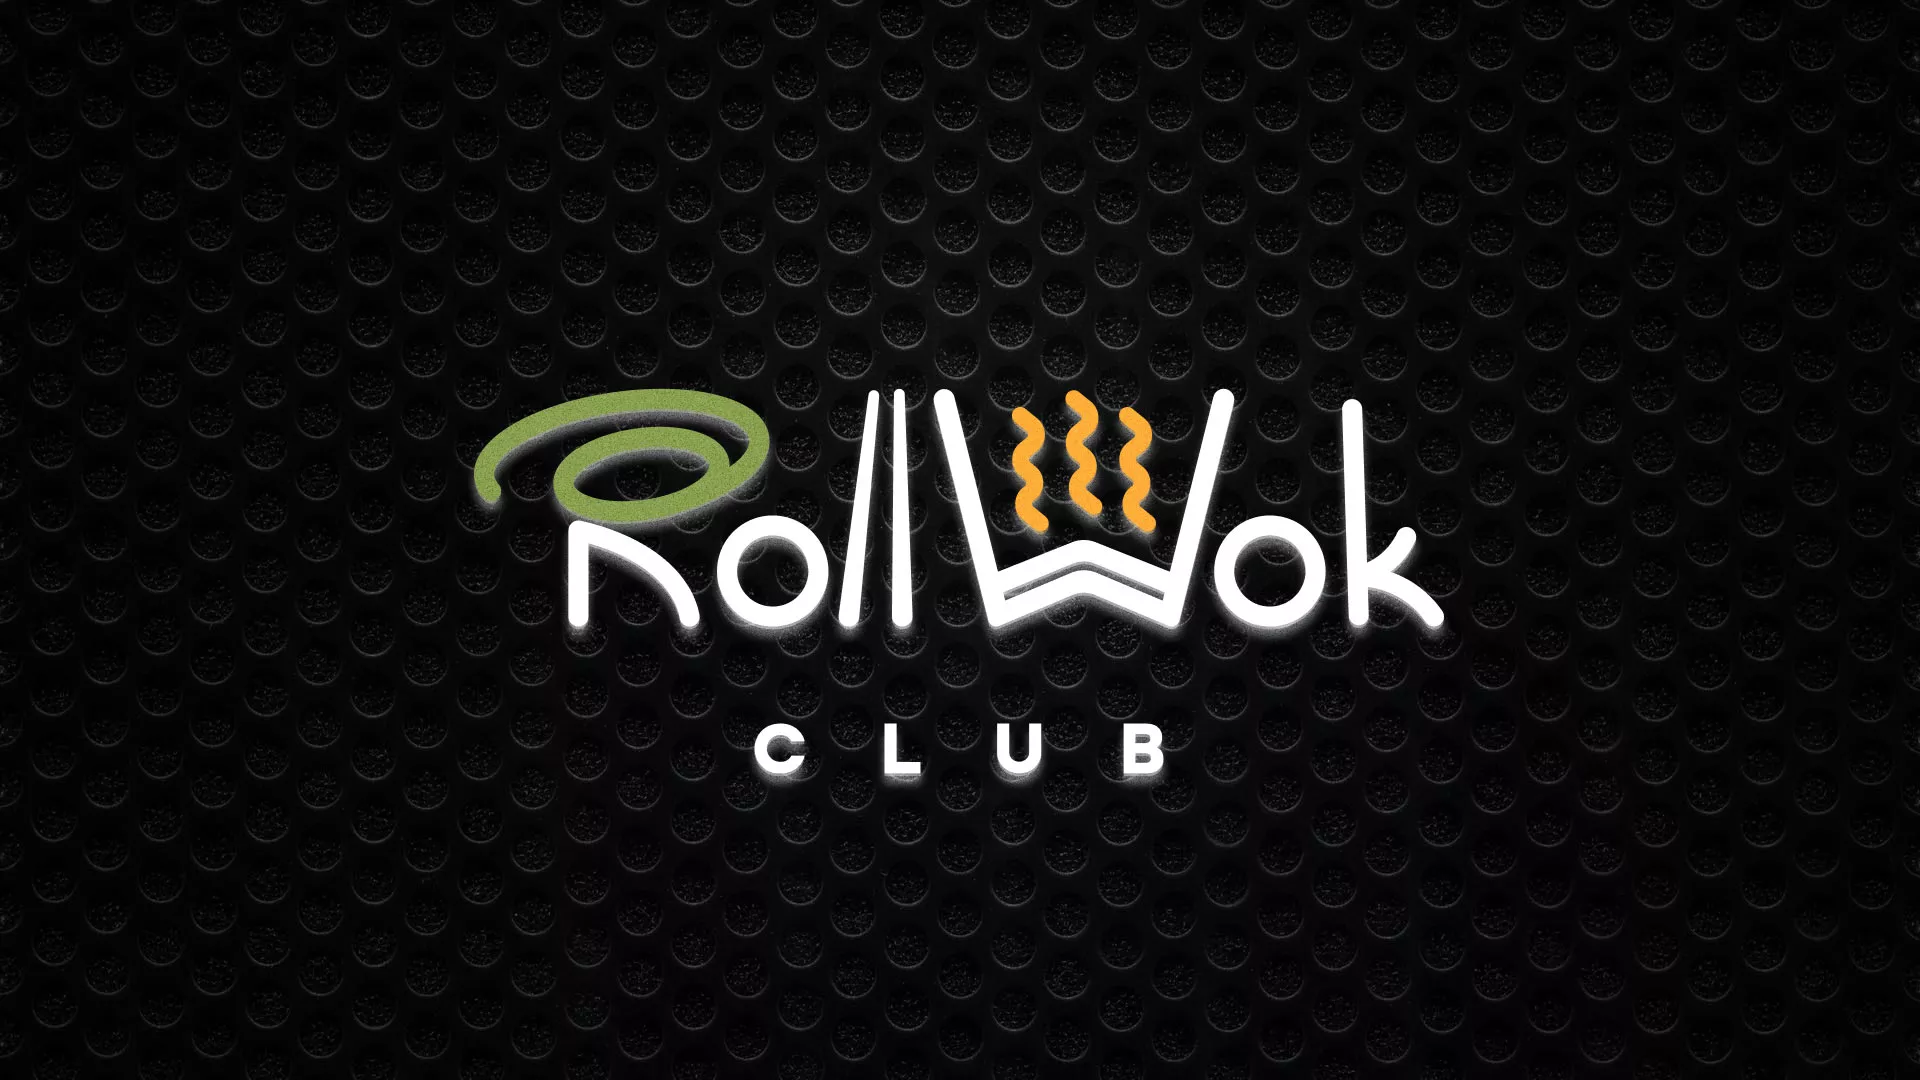 Брендирование торговых точек суши-бара «Roll Wok Club» в Усть-Катаве